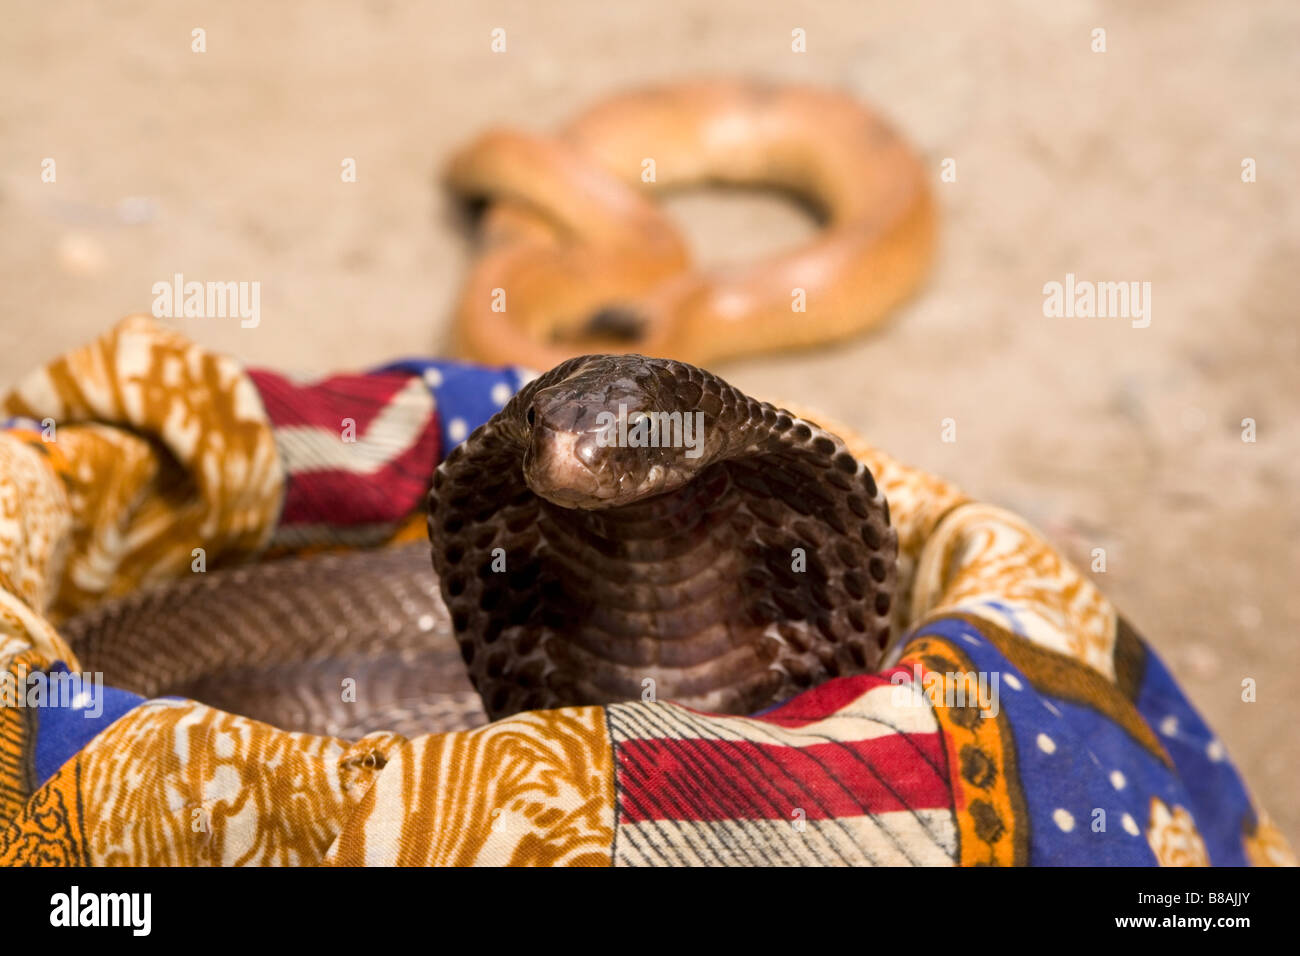 Un picchi cobra fuori dal cestello di una snakecharmer nell'insediamento di Vashisht vicino a Manali in India del nord. Foto Stock